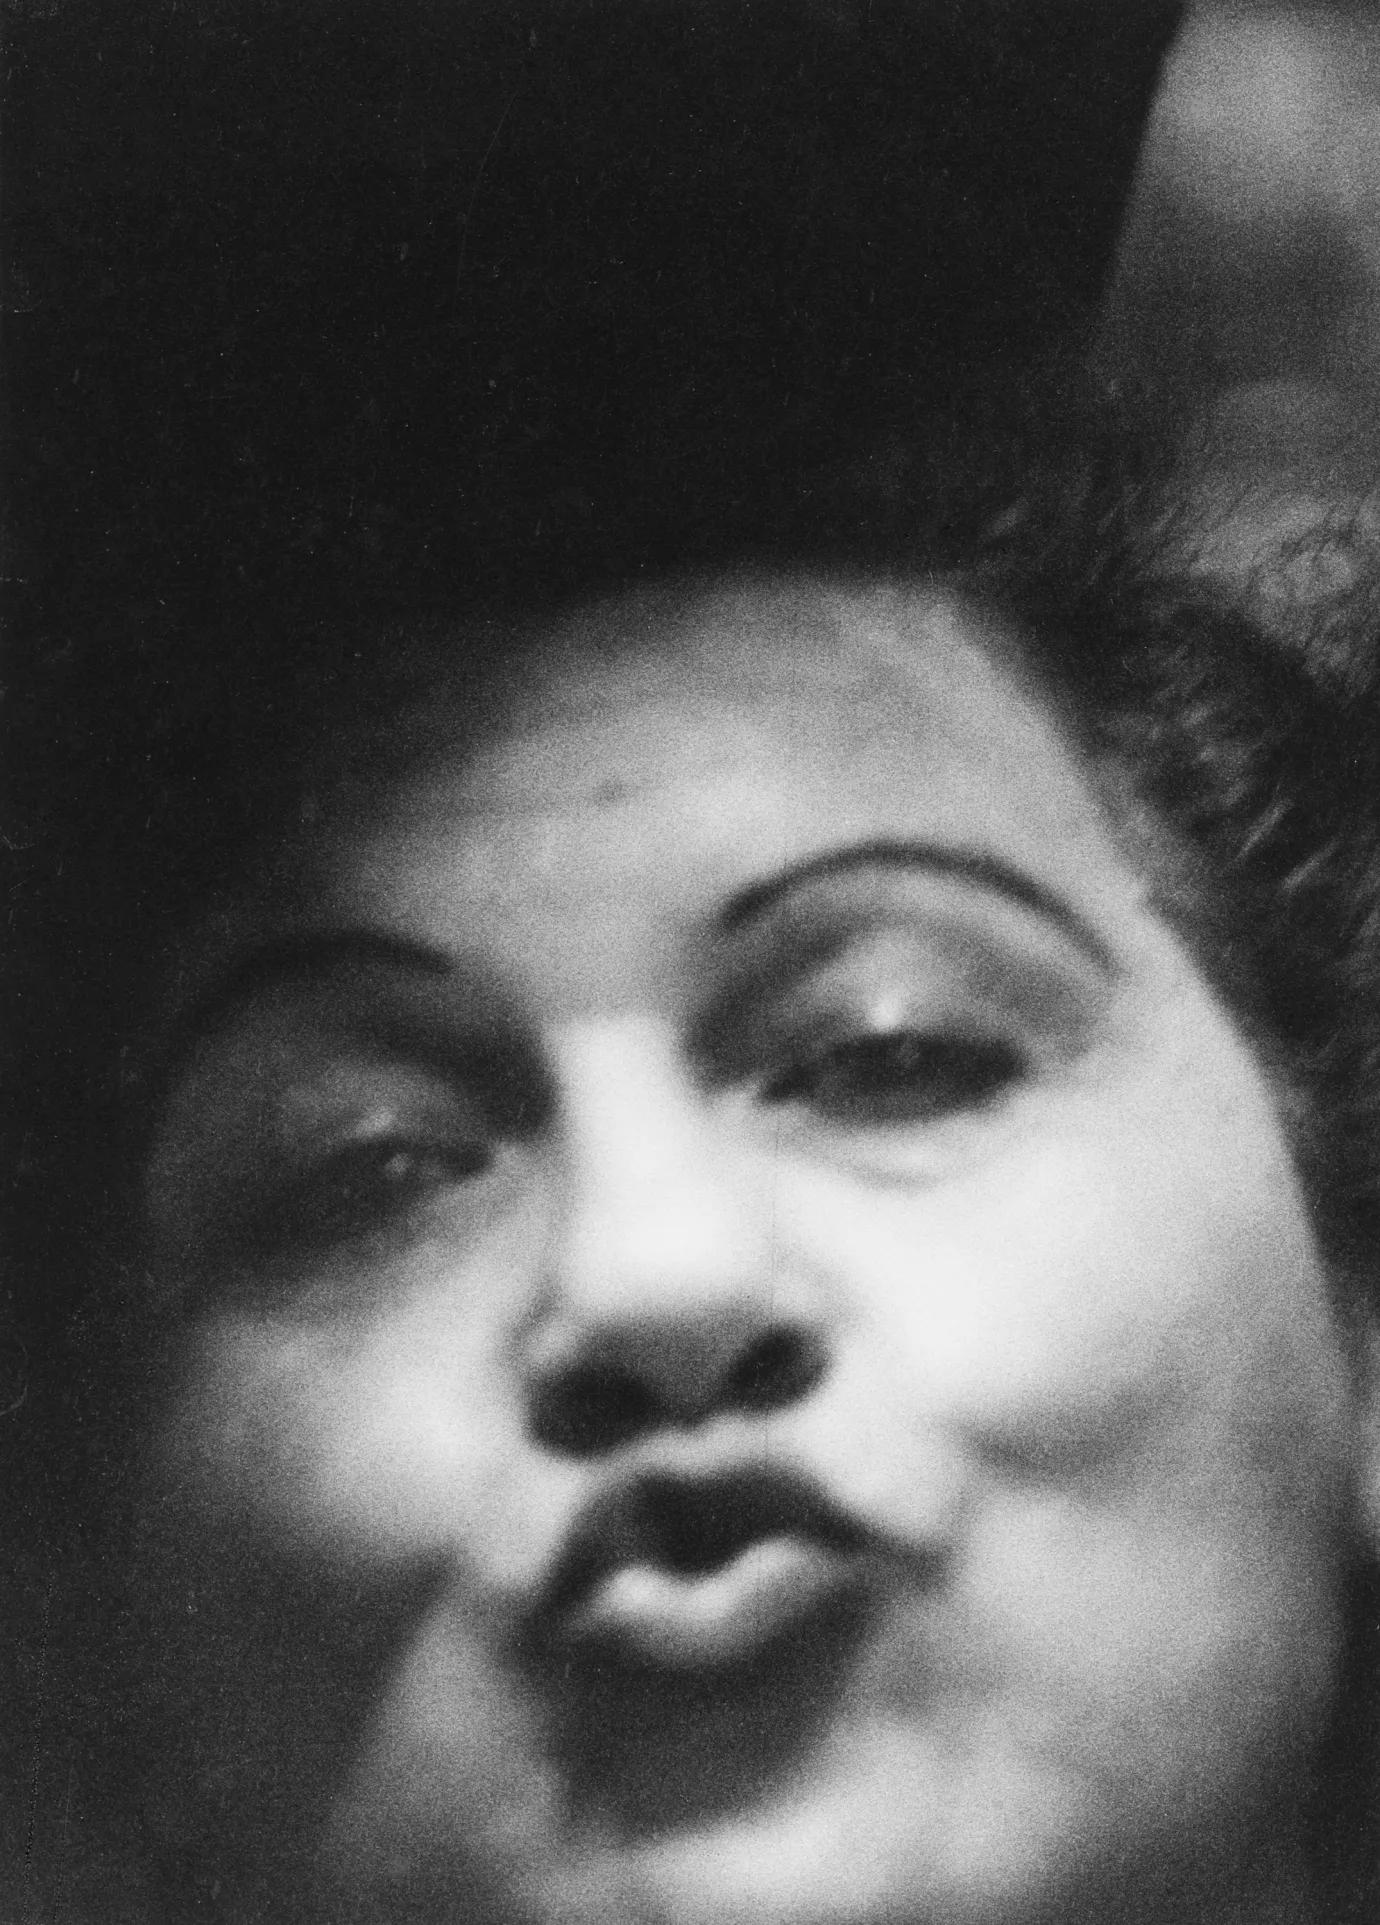  Woman making a kissy face, Sammy’s Bowery Follies, N.Y.C. 1958 gelatin silver print, 14 x 11 inches (sheet) [35.6 x 27.9 cm]